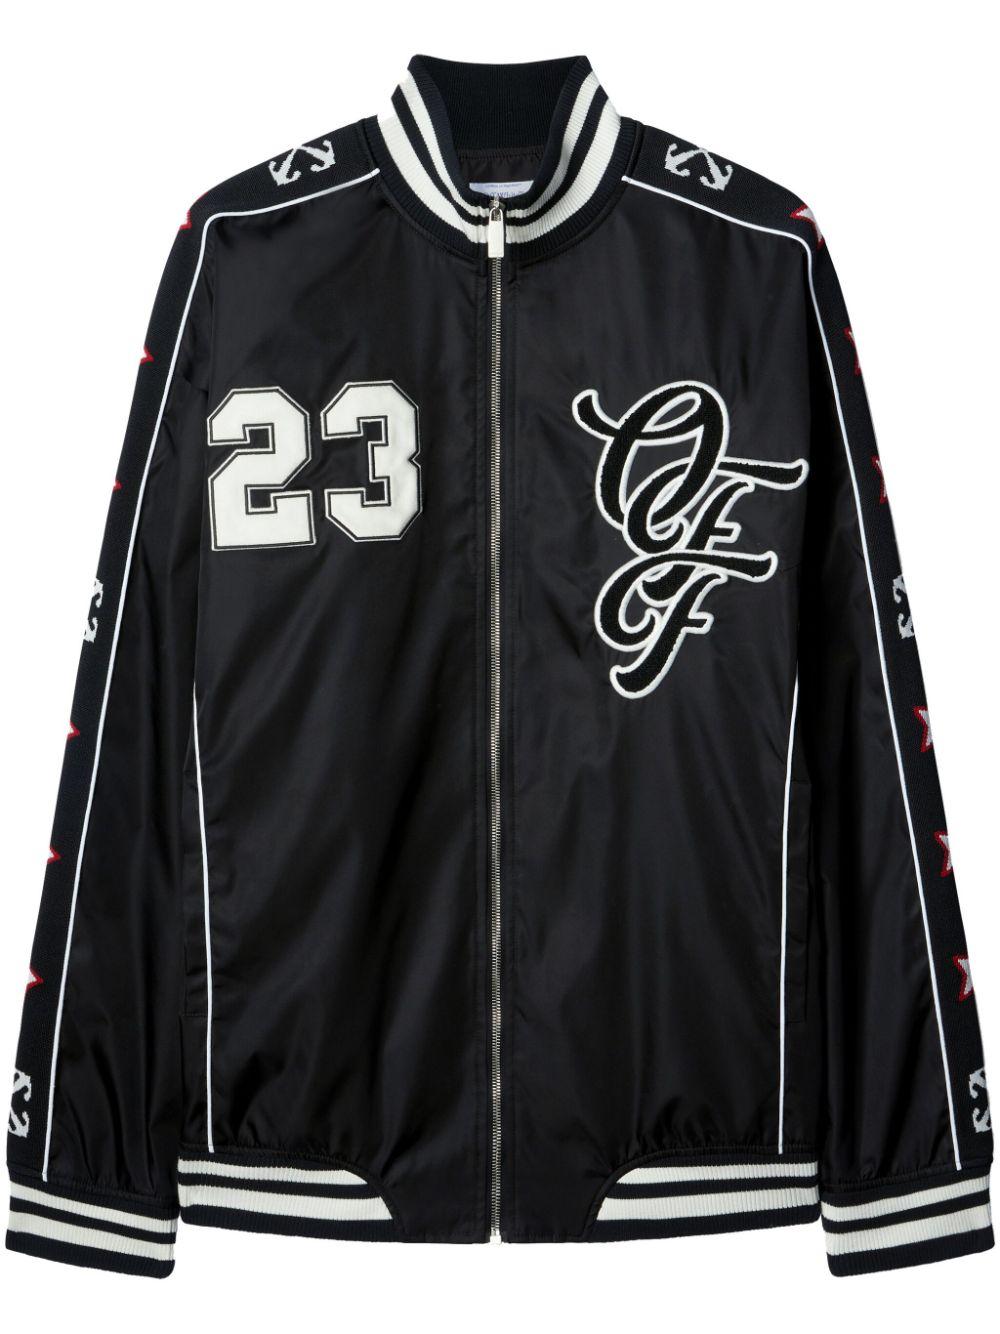 Áo khoác thể thao Varsity cho nam, màu đen và trắng, bộ sưu tập SS24